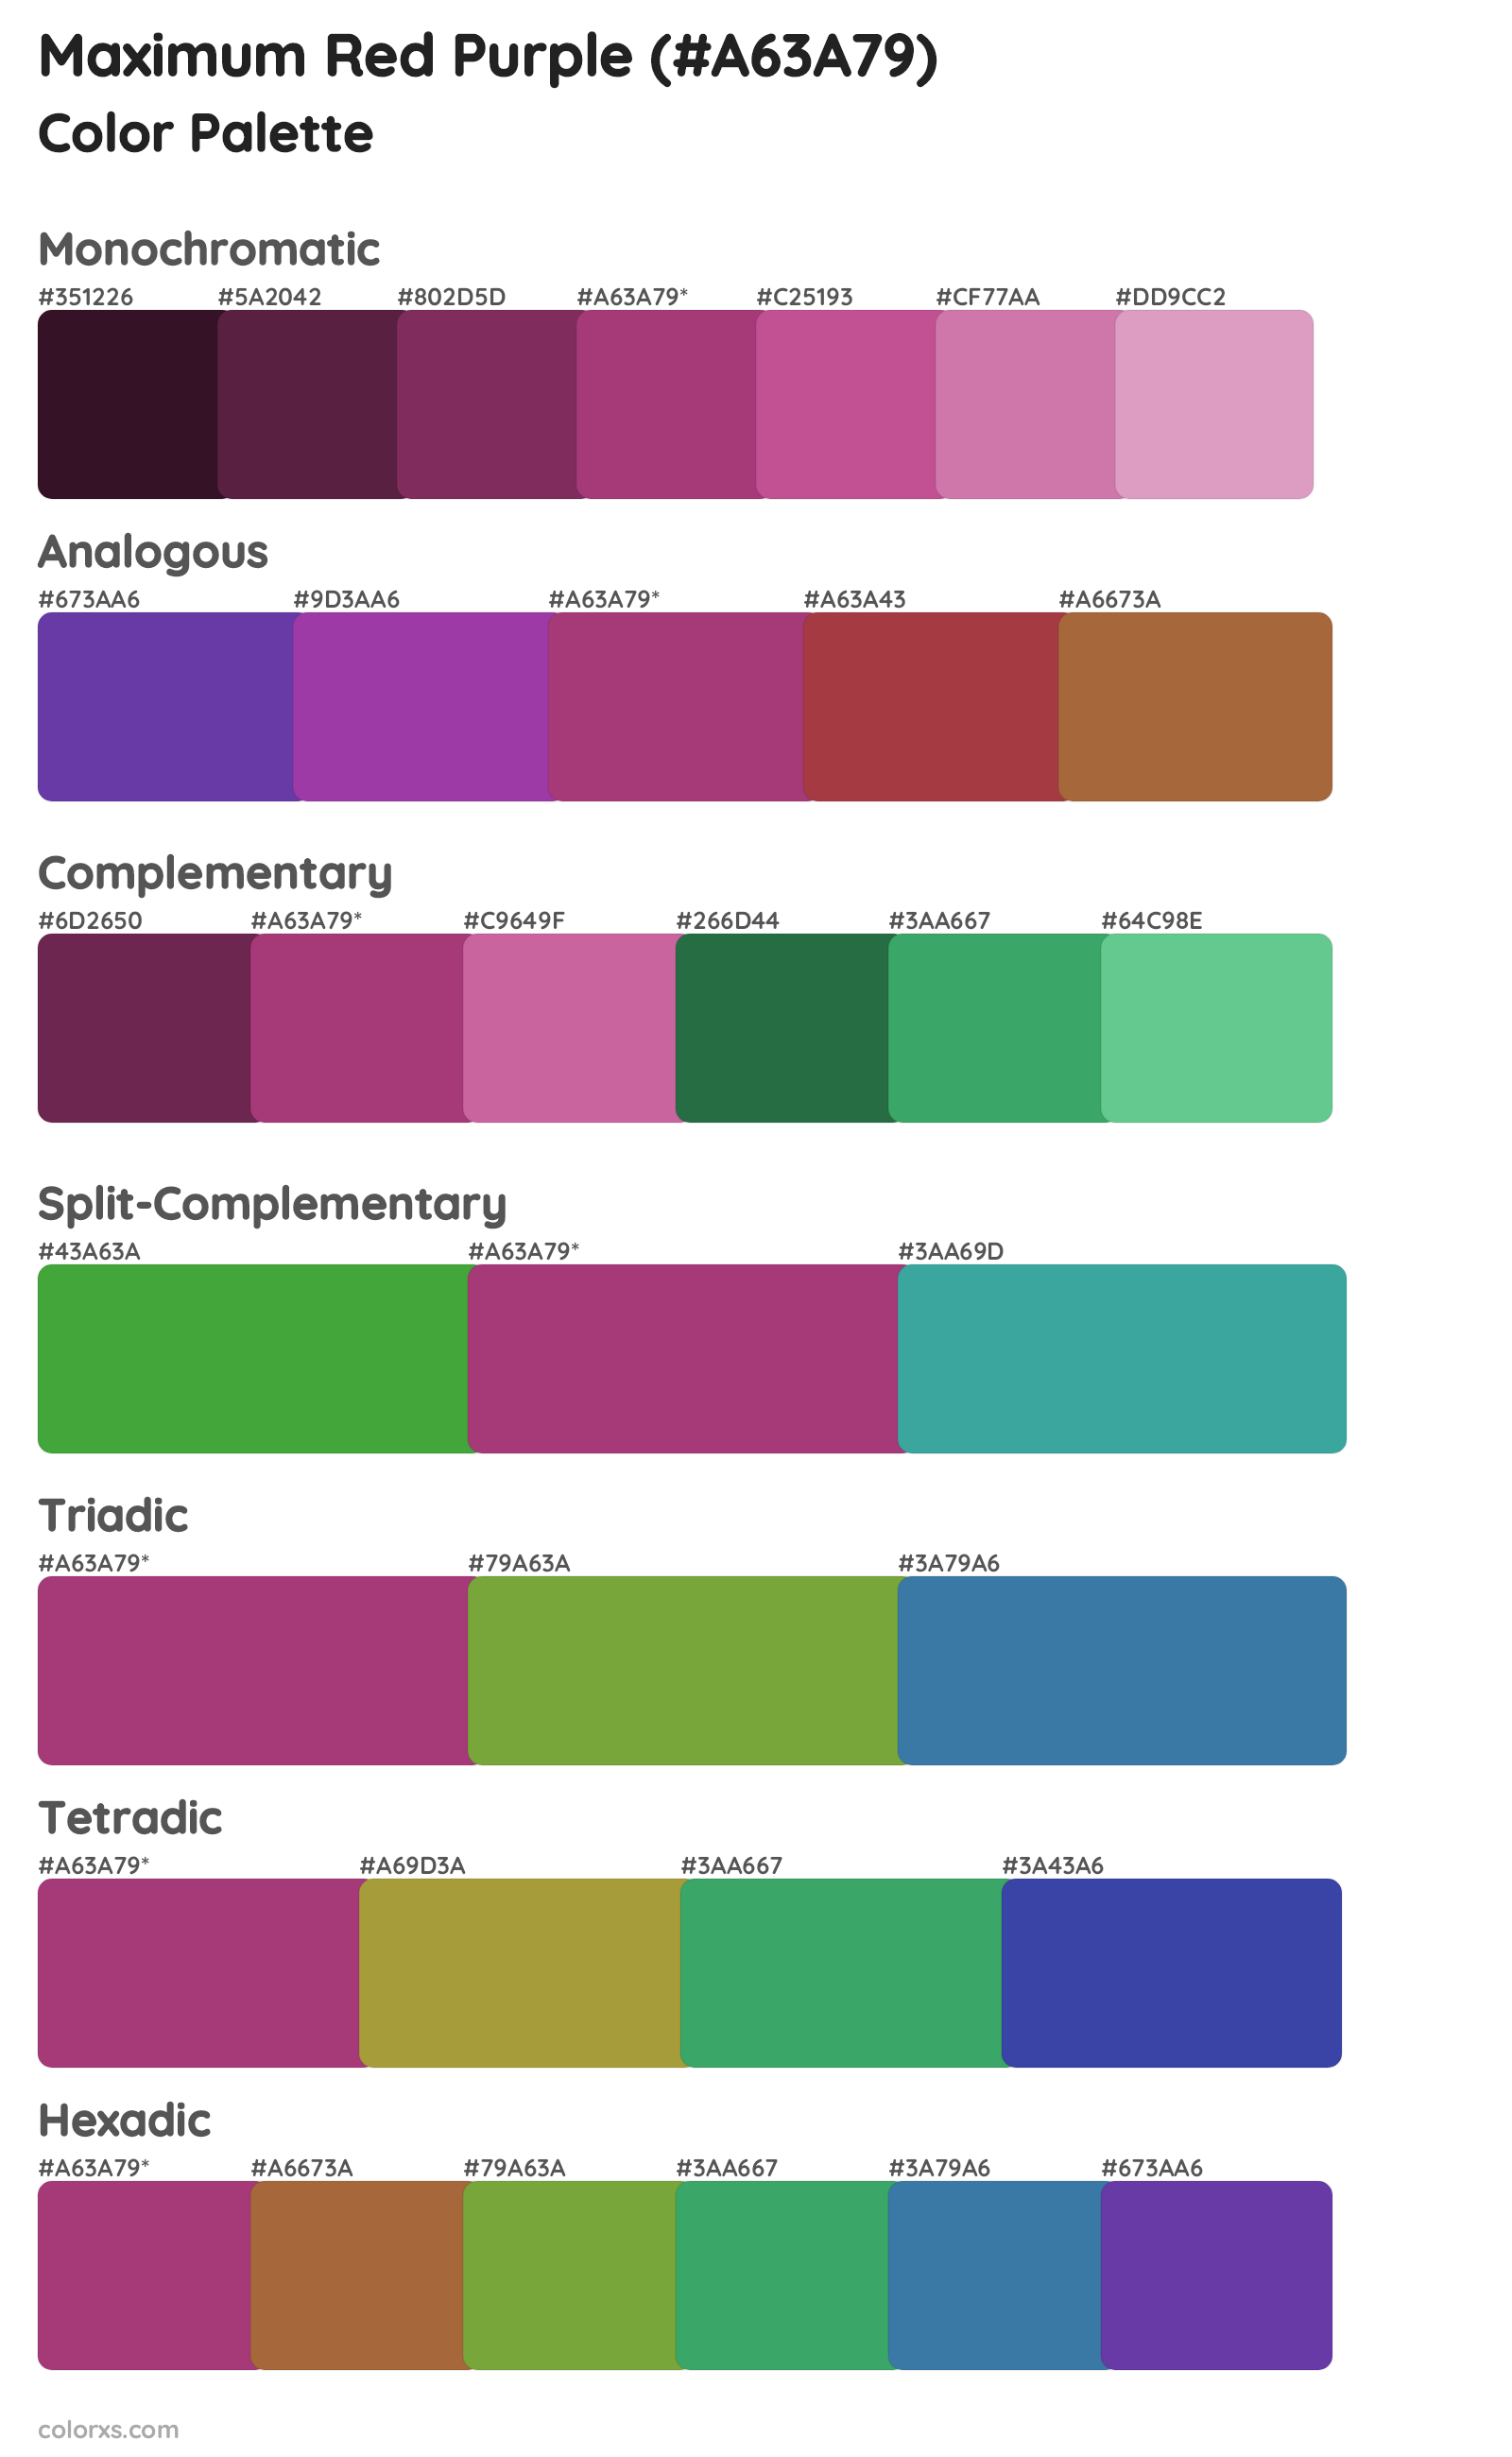 Maximum Red Purple Color Scheme Palettes